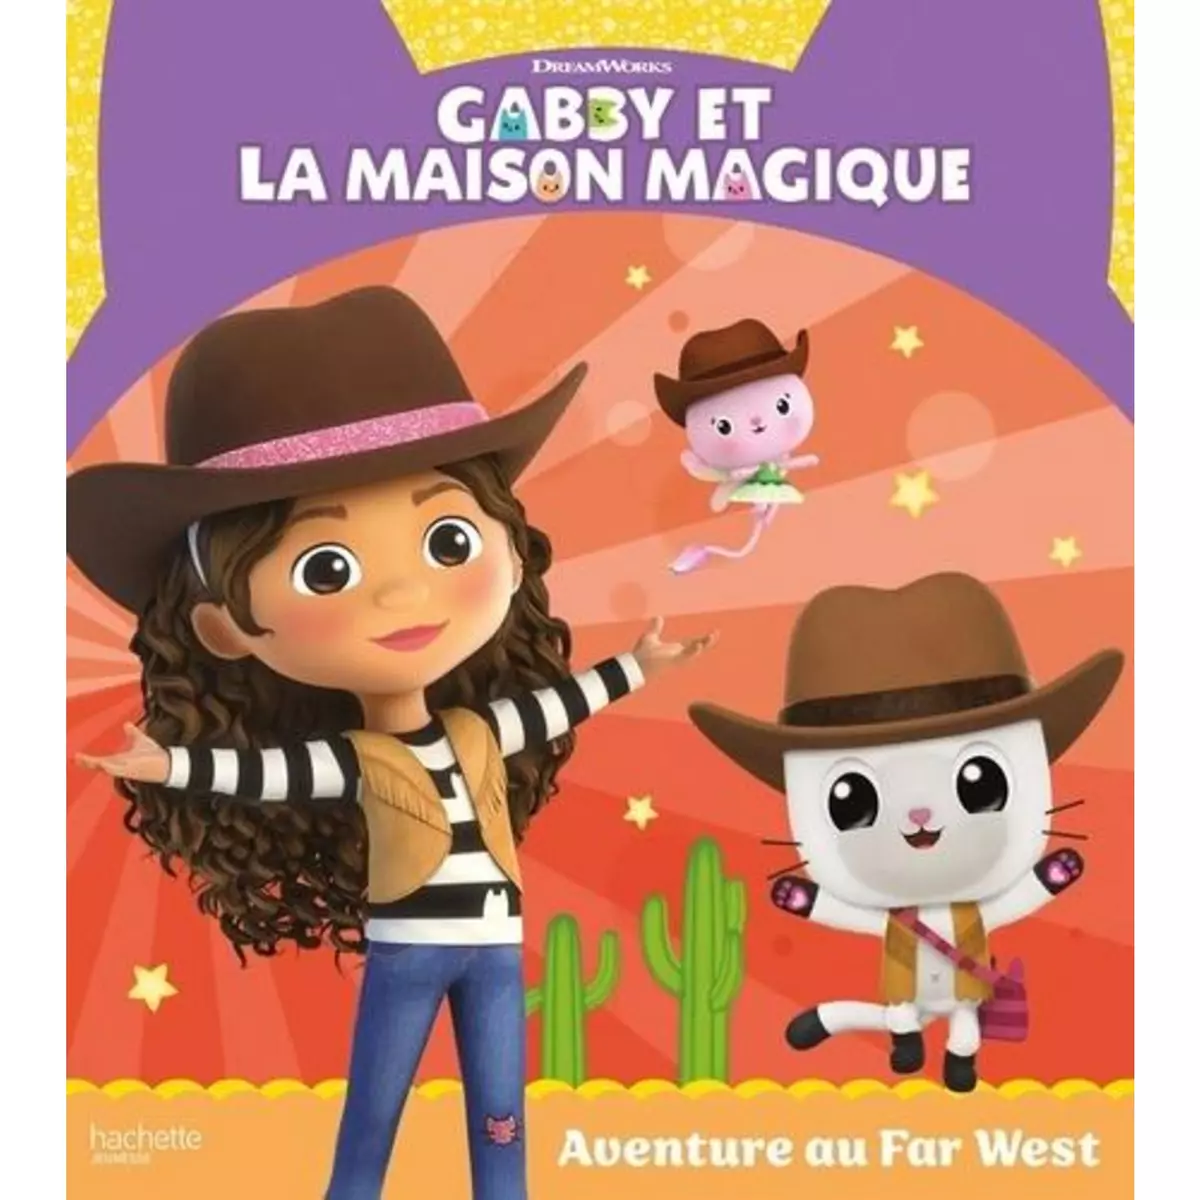  GABBY ET LA MAISON MAGIQUE : AVENTURE AU FAR WEST, DreamWorks